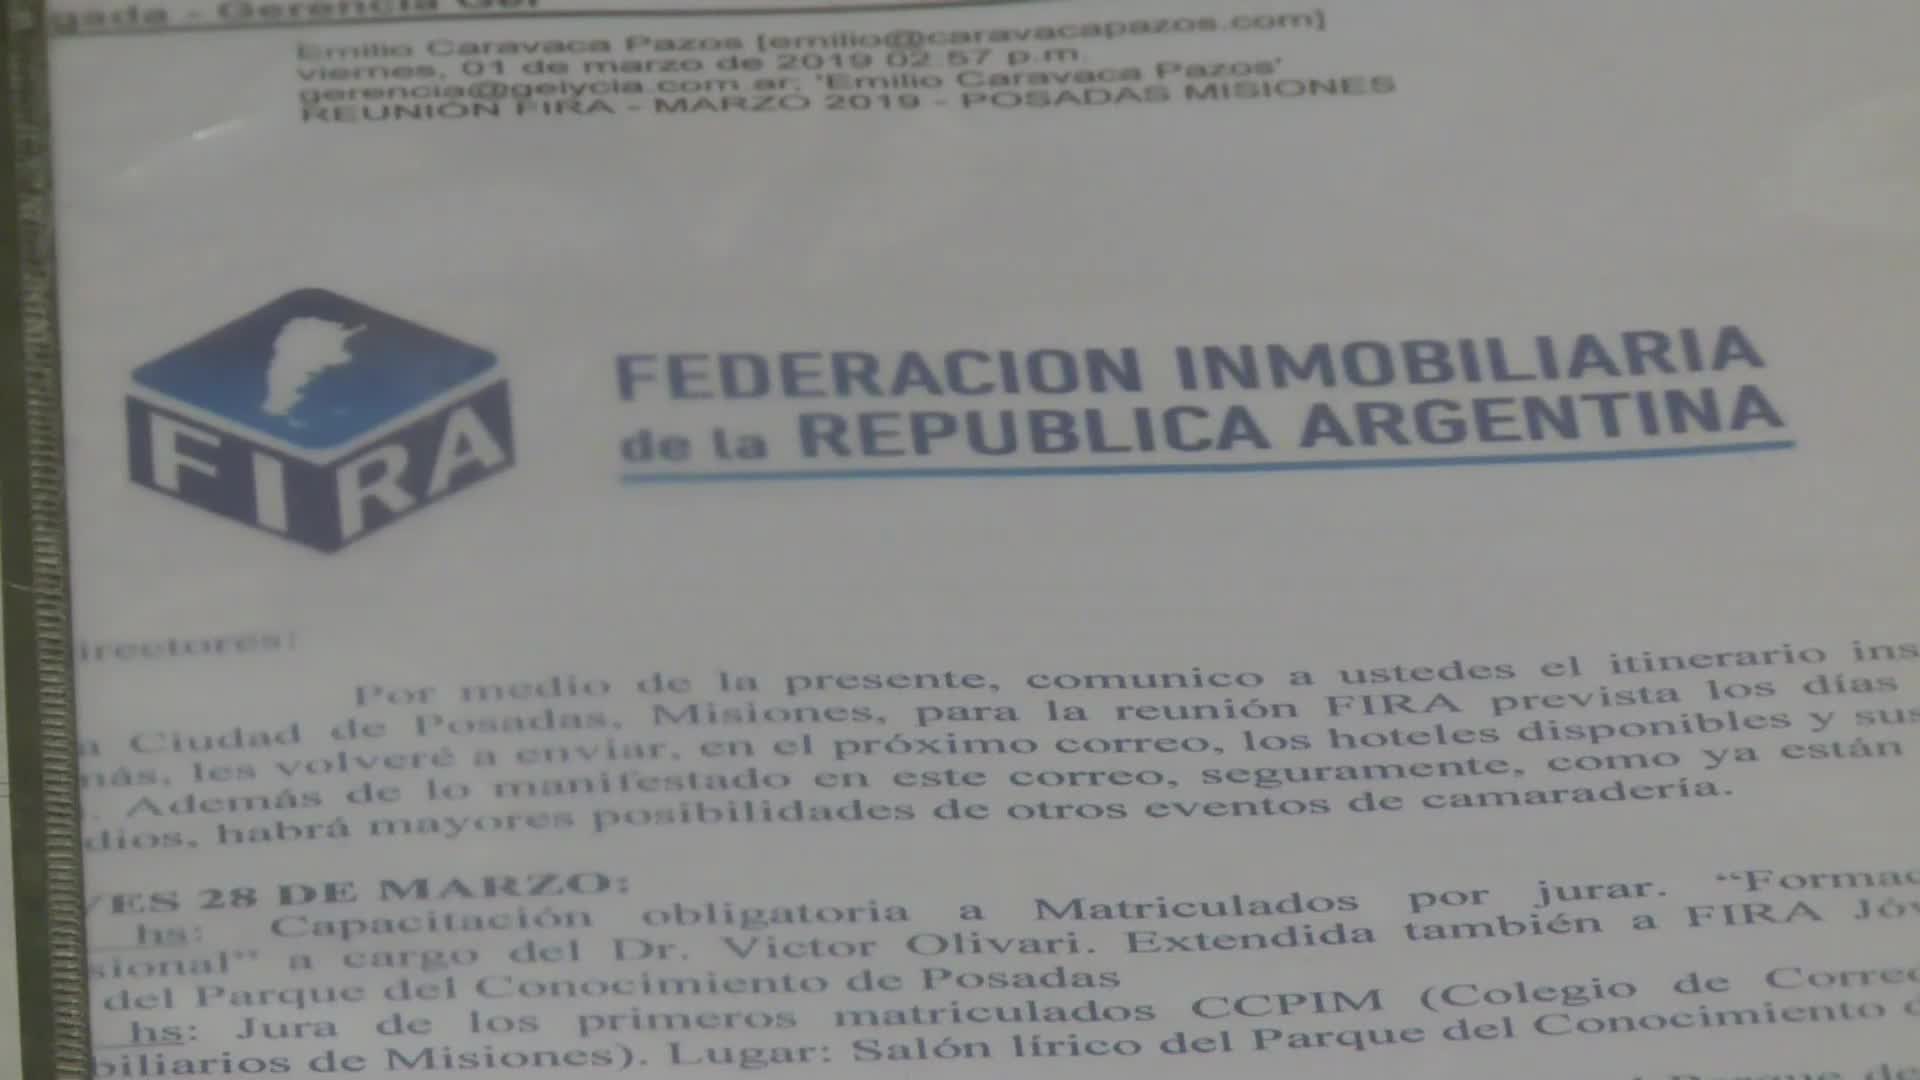 Se realiza en Posadas la primera reunión de la Federación Inmobiliaria Argentina